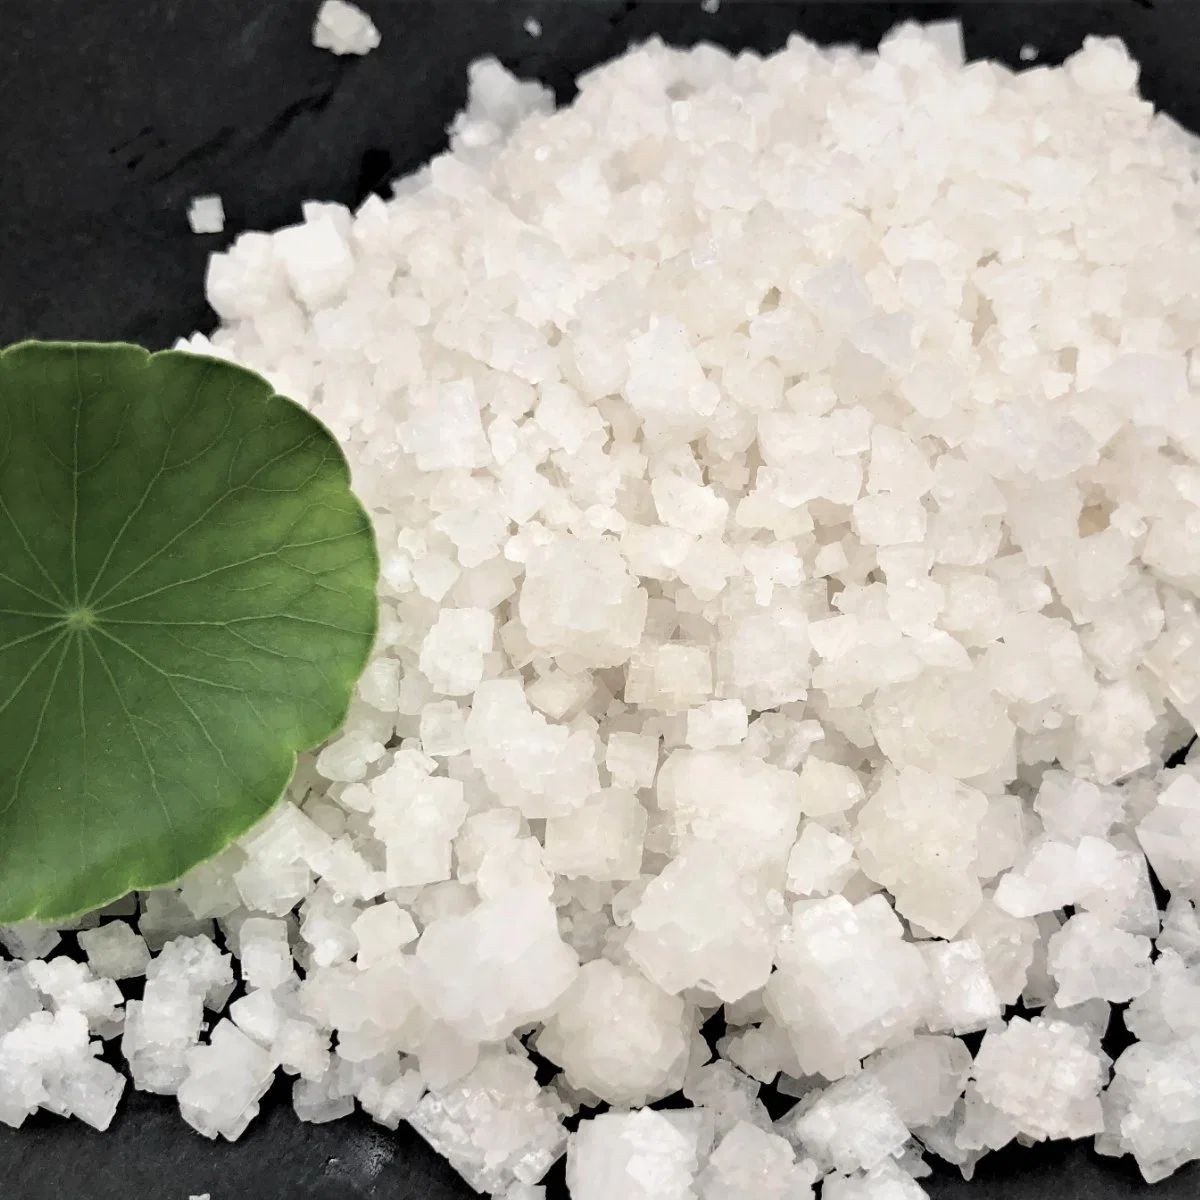 Industrial Salt, Sodium Chloride, Melting Snow Salt